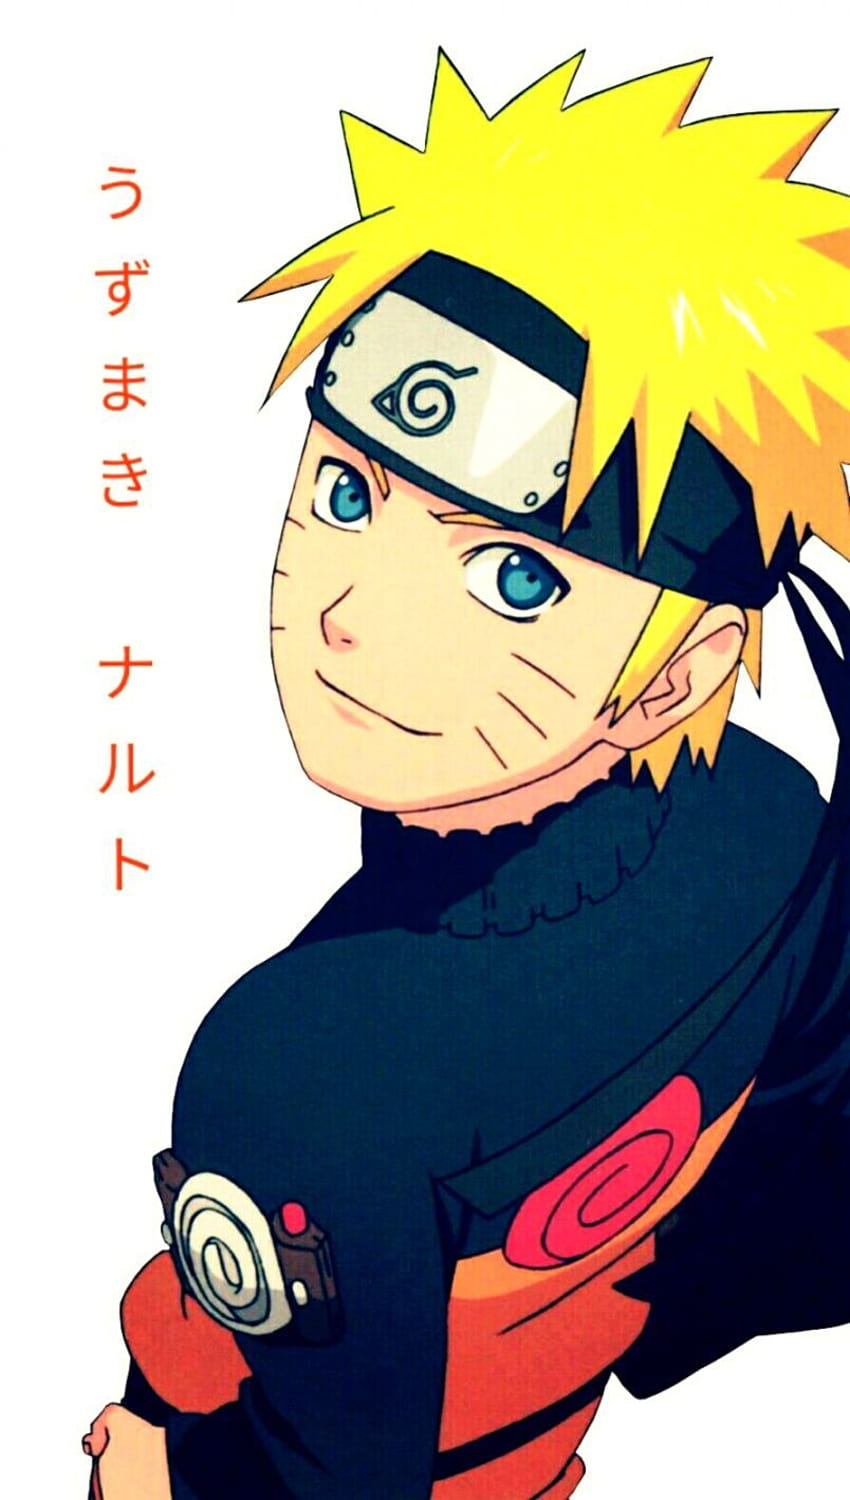 Trang trí màn hình iPhone của bạn với hình nền Naruto dễ thương! Hình ảnh đầy sáng tạo và màu sắc sinh động của Naruto sẽ khiến bạn cảm thấy vui vẻ và thoải mái. Hãy để cuộc sống trở nên tươi sáng hơn với hình nền Naruto này!